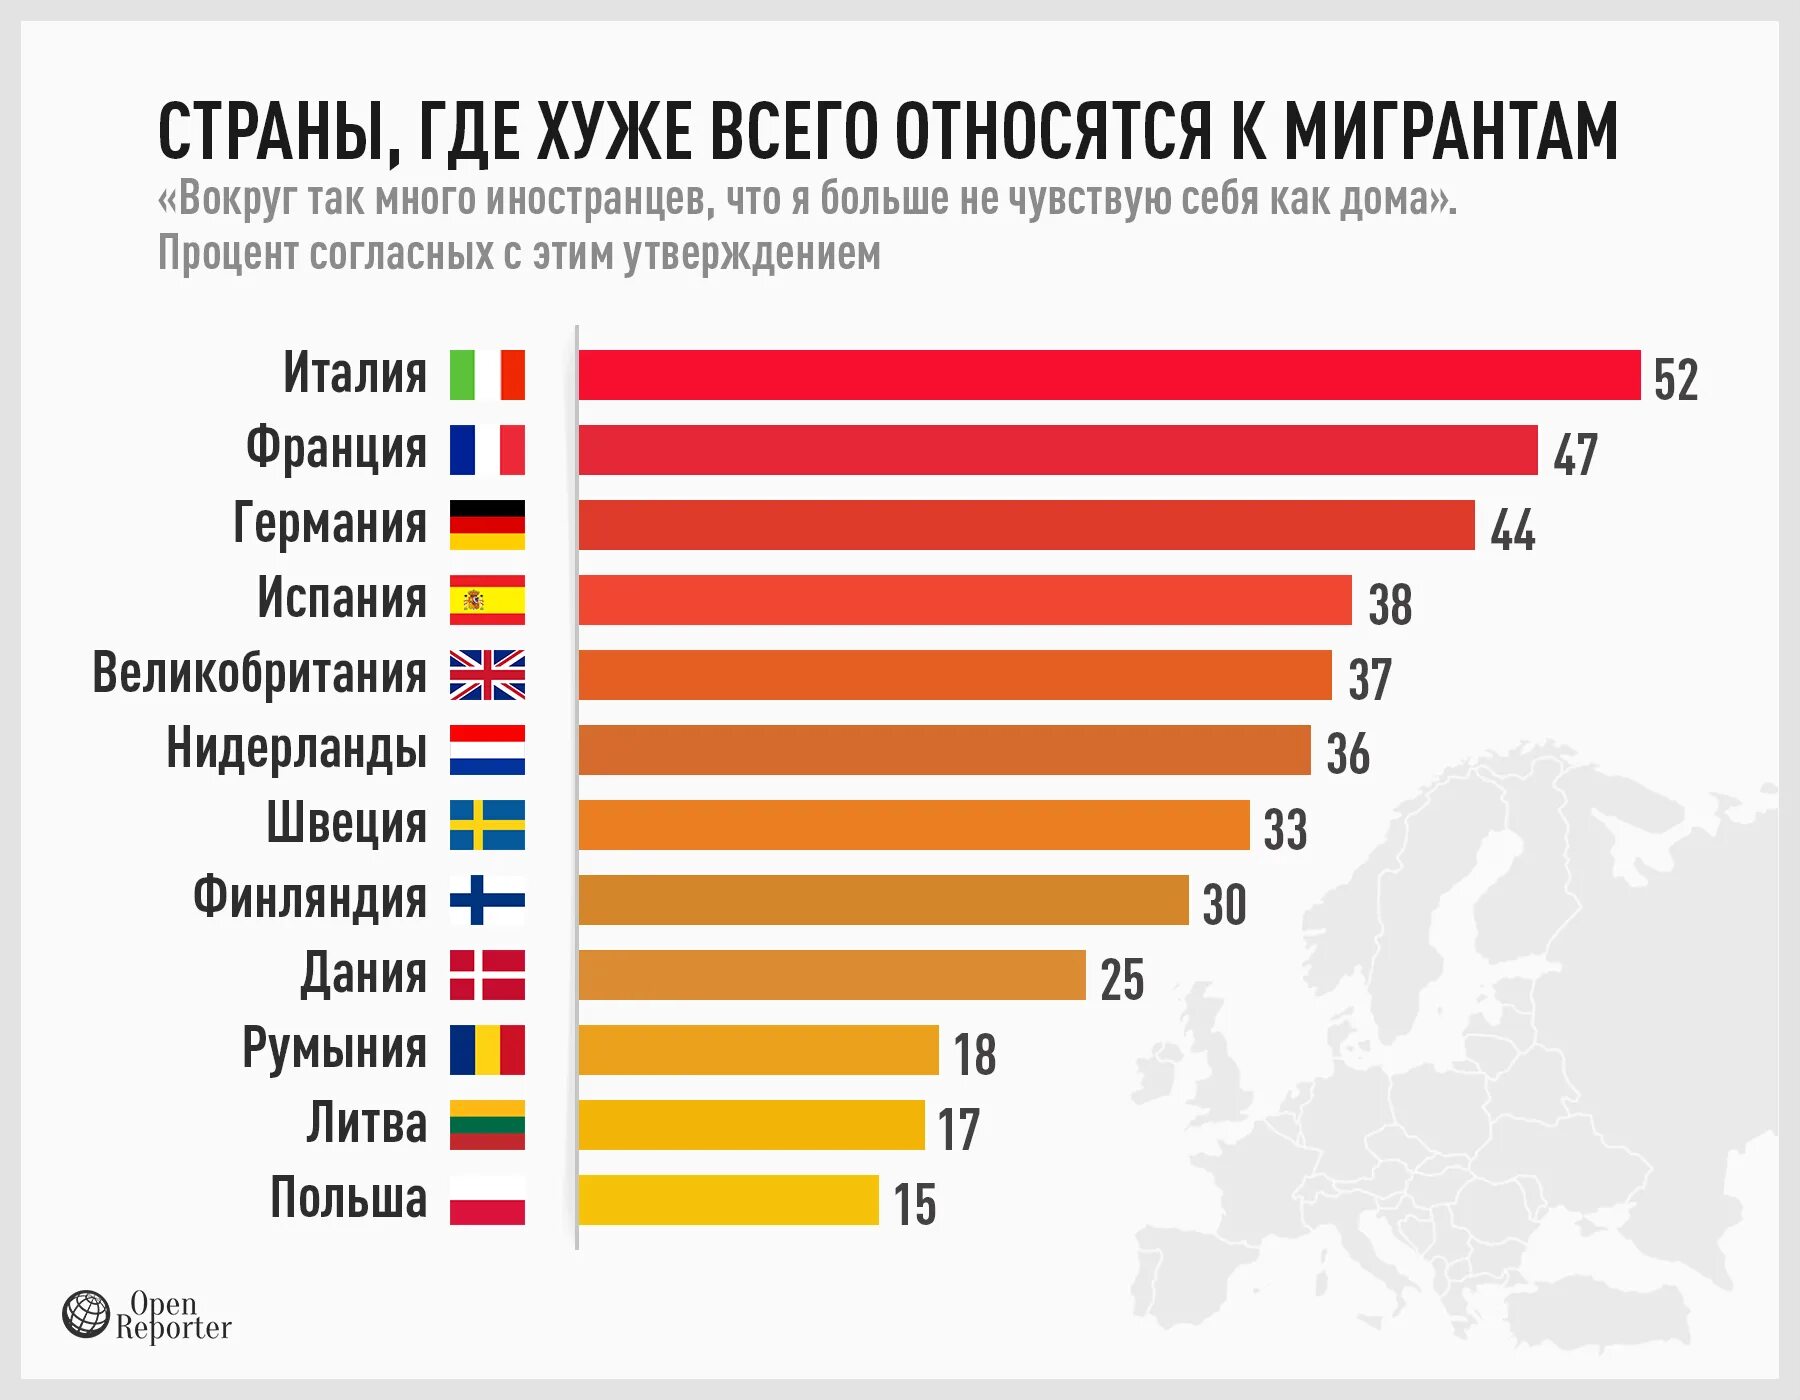 Где проще всего жить. Где больше всего мигрантов. Отношение к мигрантам в Европе. Статистика расизма по странам. Миграция в страны Европы.